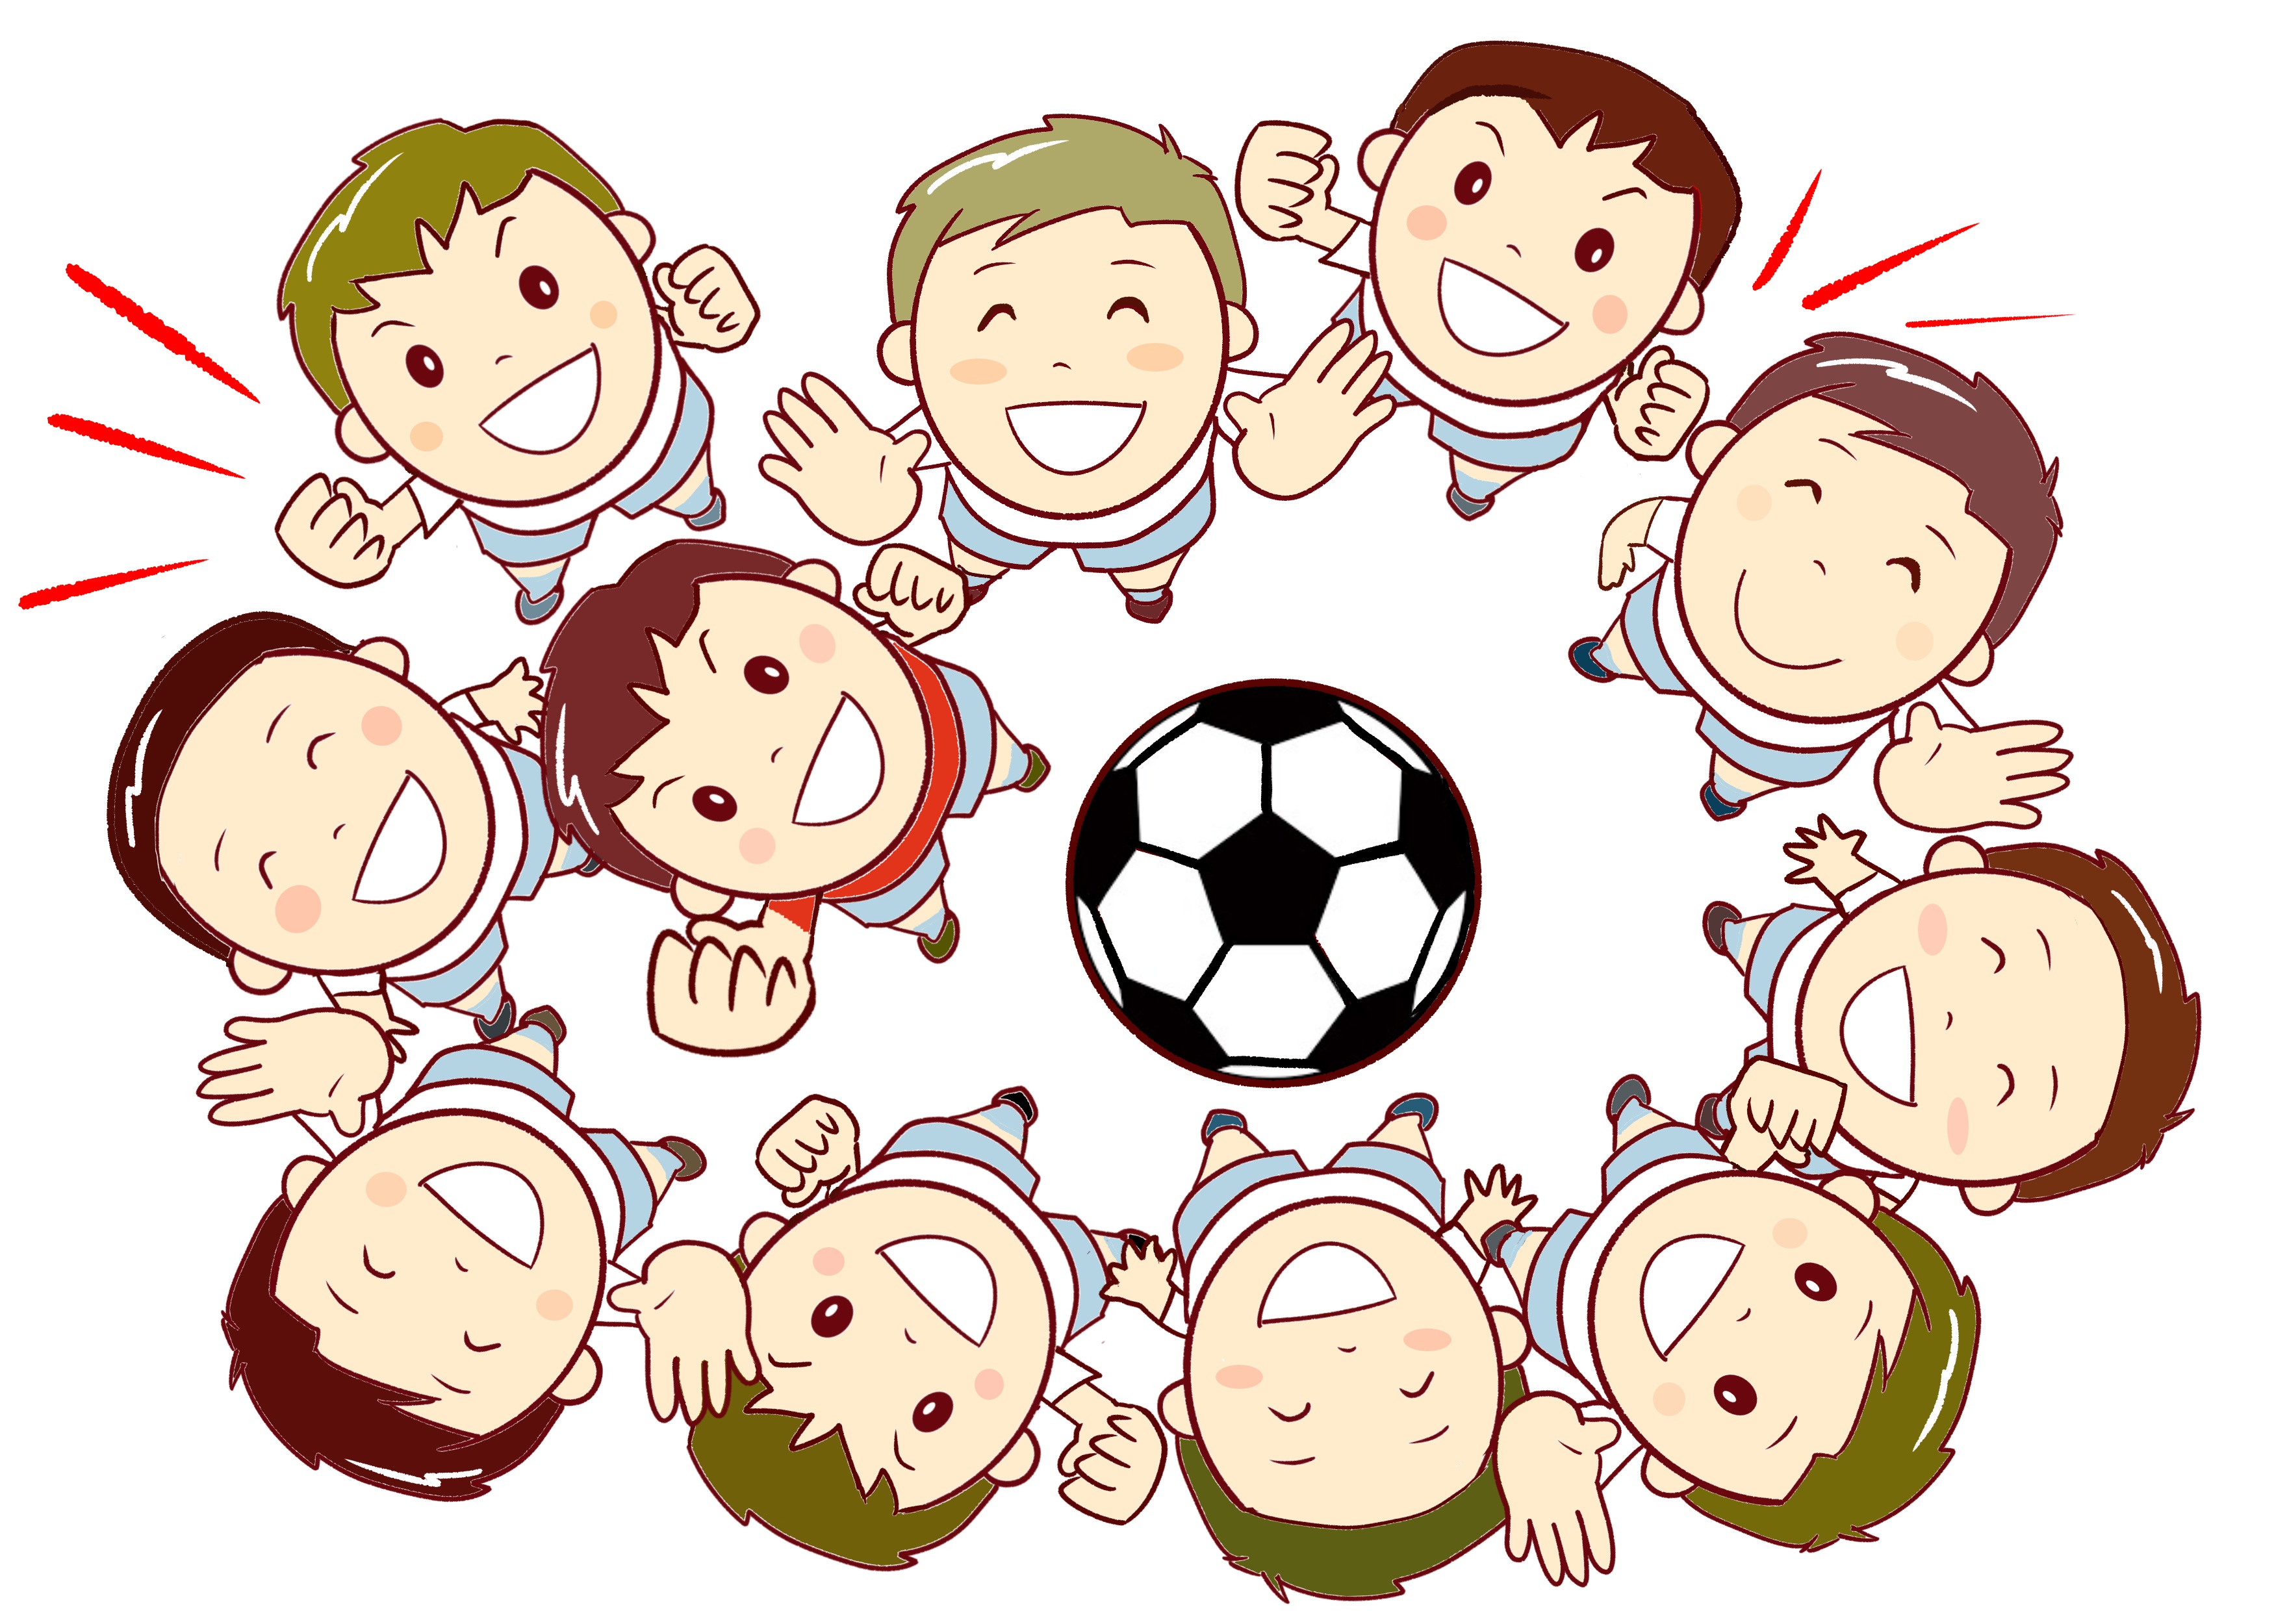 大津市立仰木の里東小学校で活動する『里東フットボールクラブ』が新メンバーを募集中です。体験会に参加しませんか？【6月6、13、20、27日】